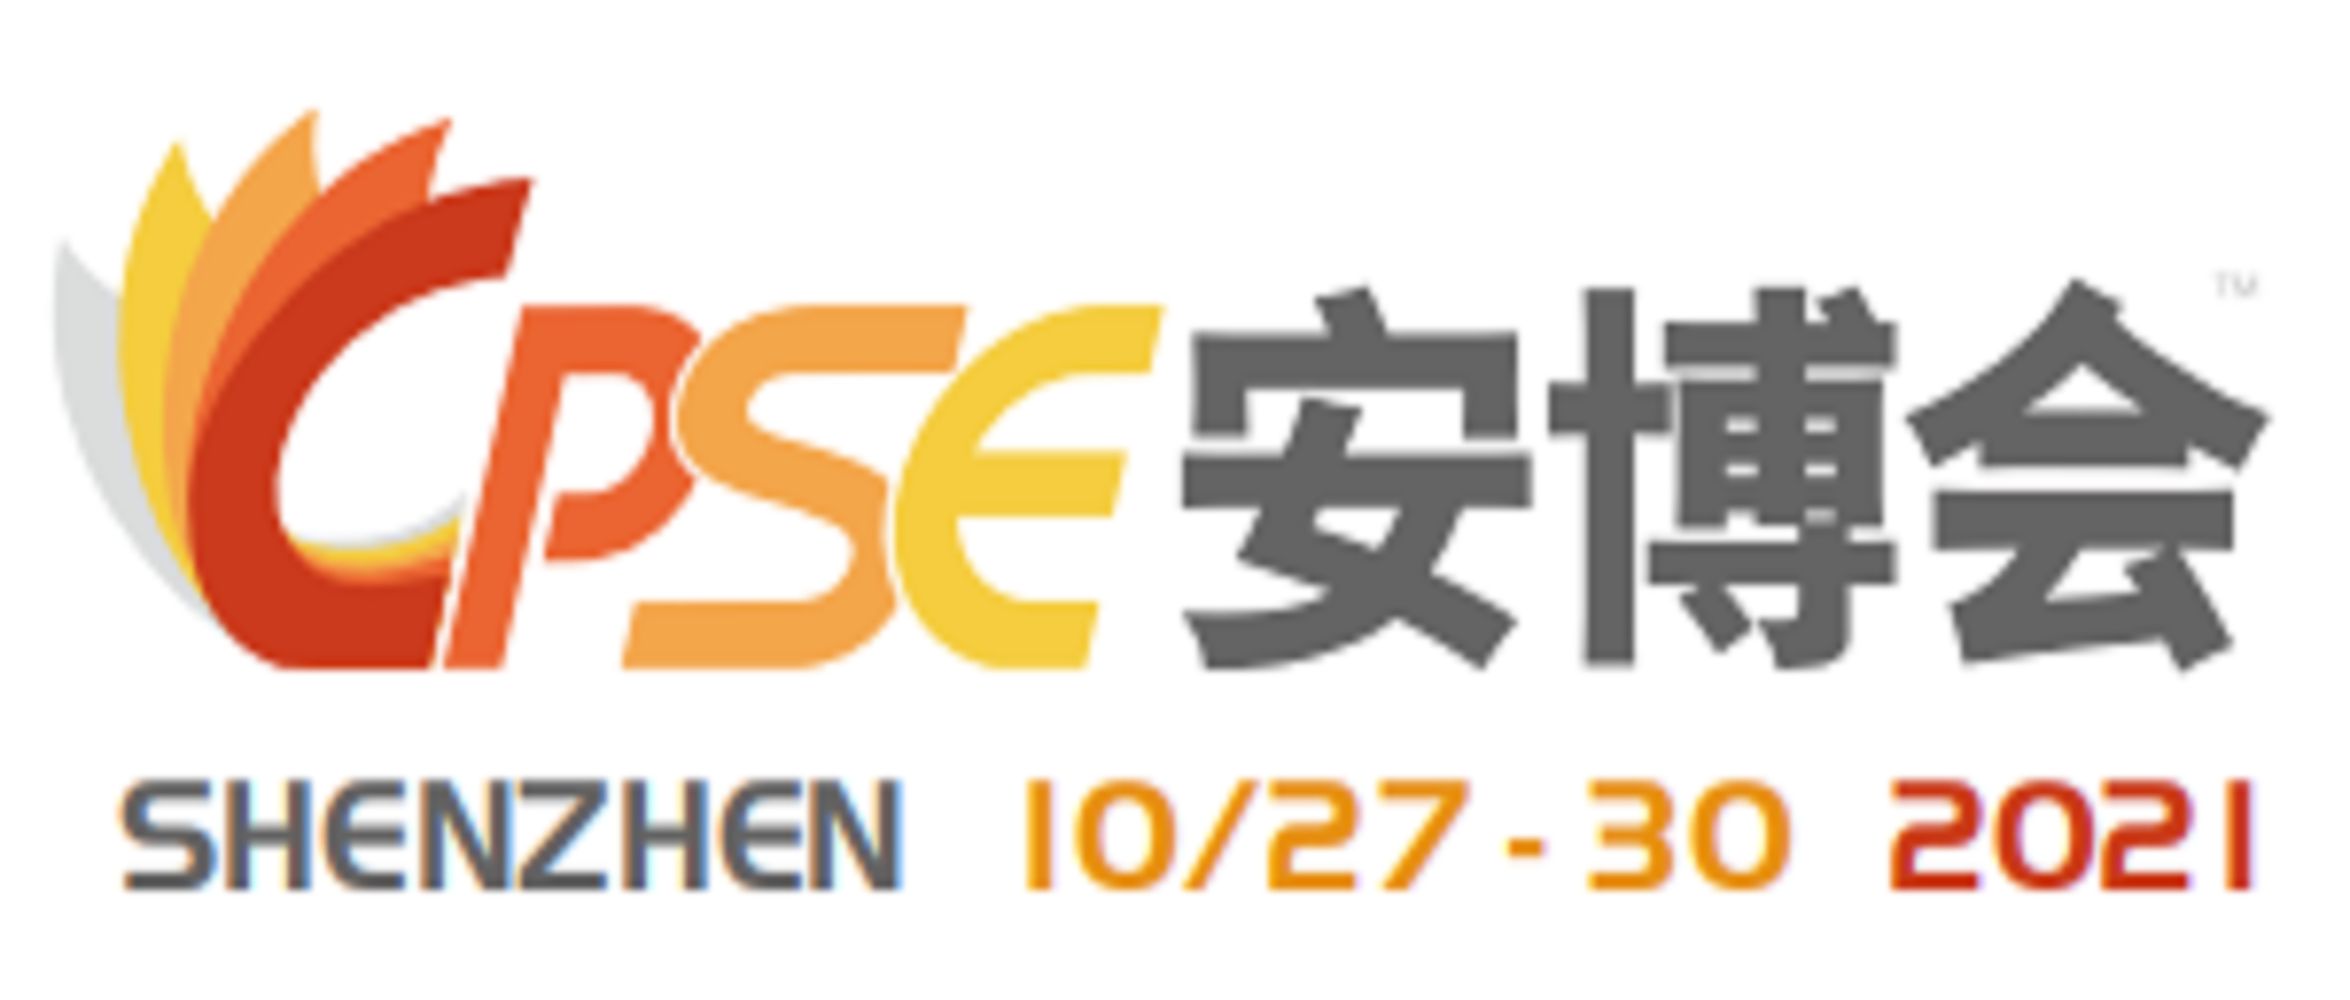 第十八届中国国际社会公共安全博览会   THE 18TH CHINA PUBLIC SECURITY EXPO